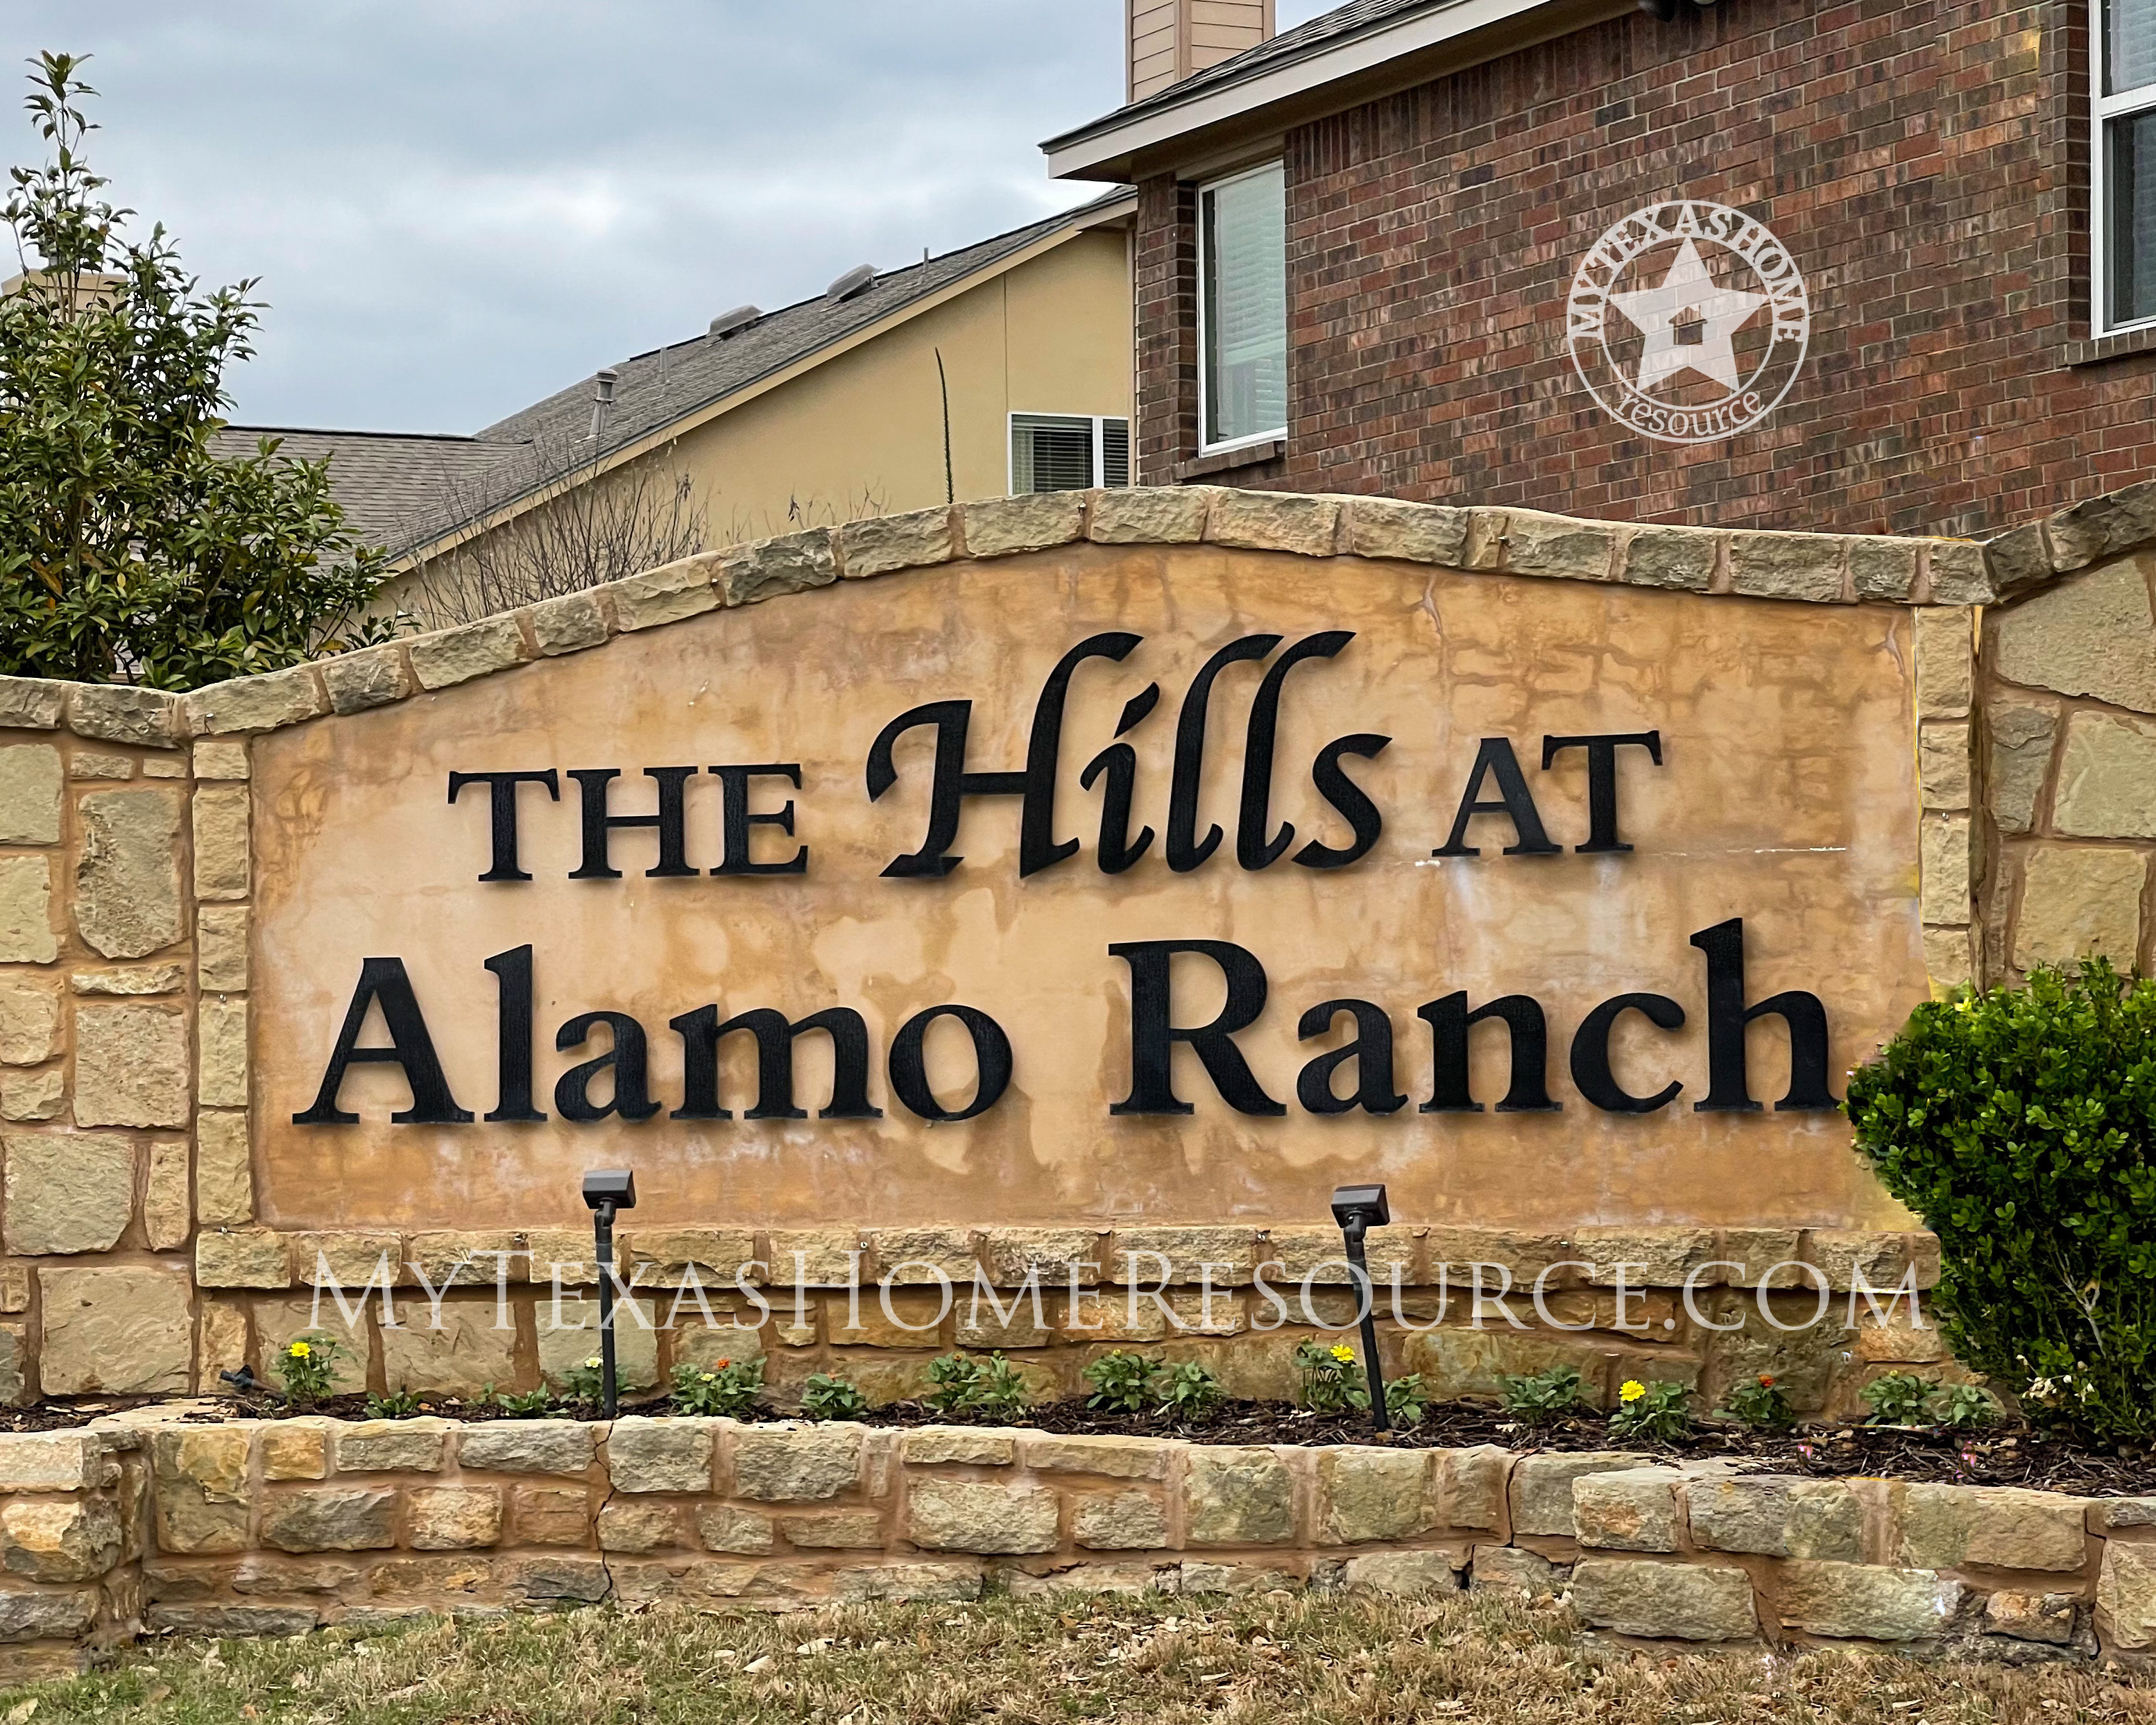 德克萨斯州网上正规的彩票网站阿拉莫牧场社区的山丘